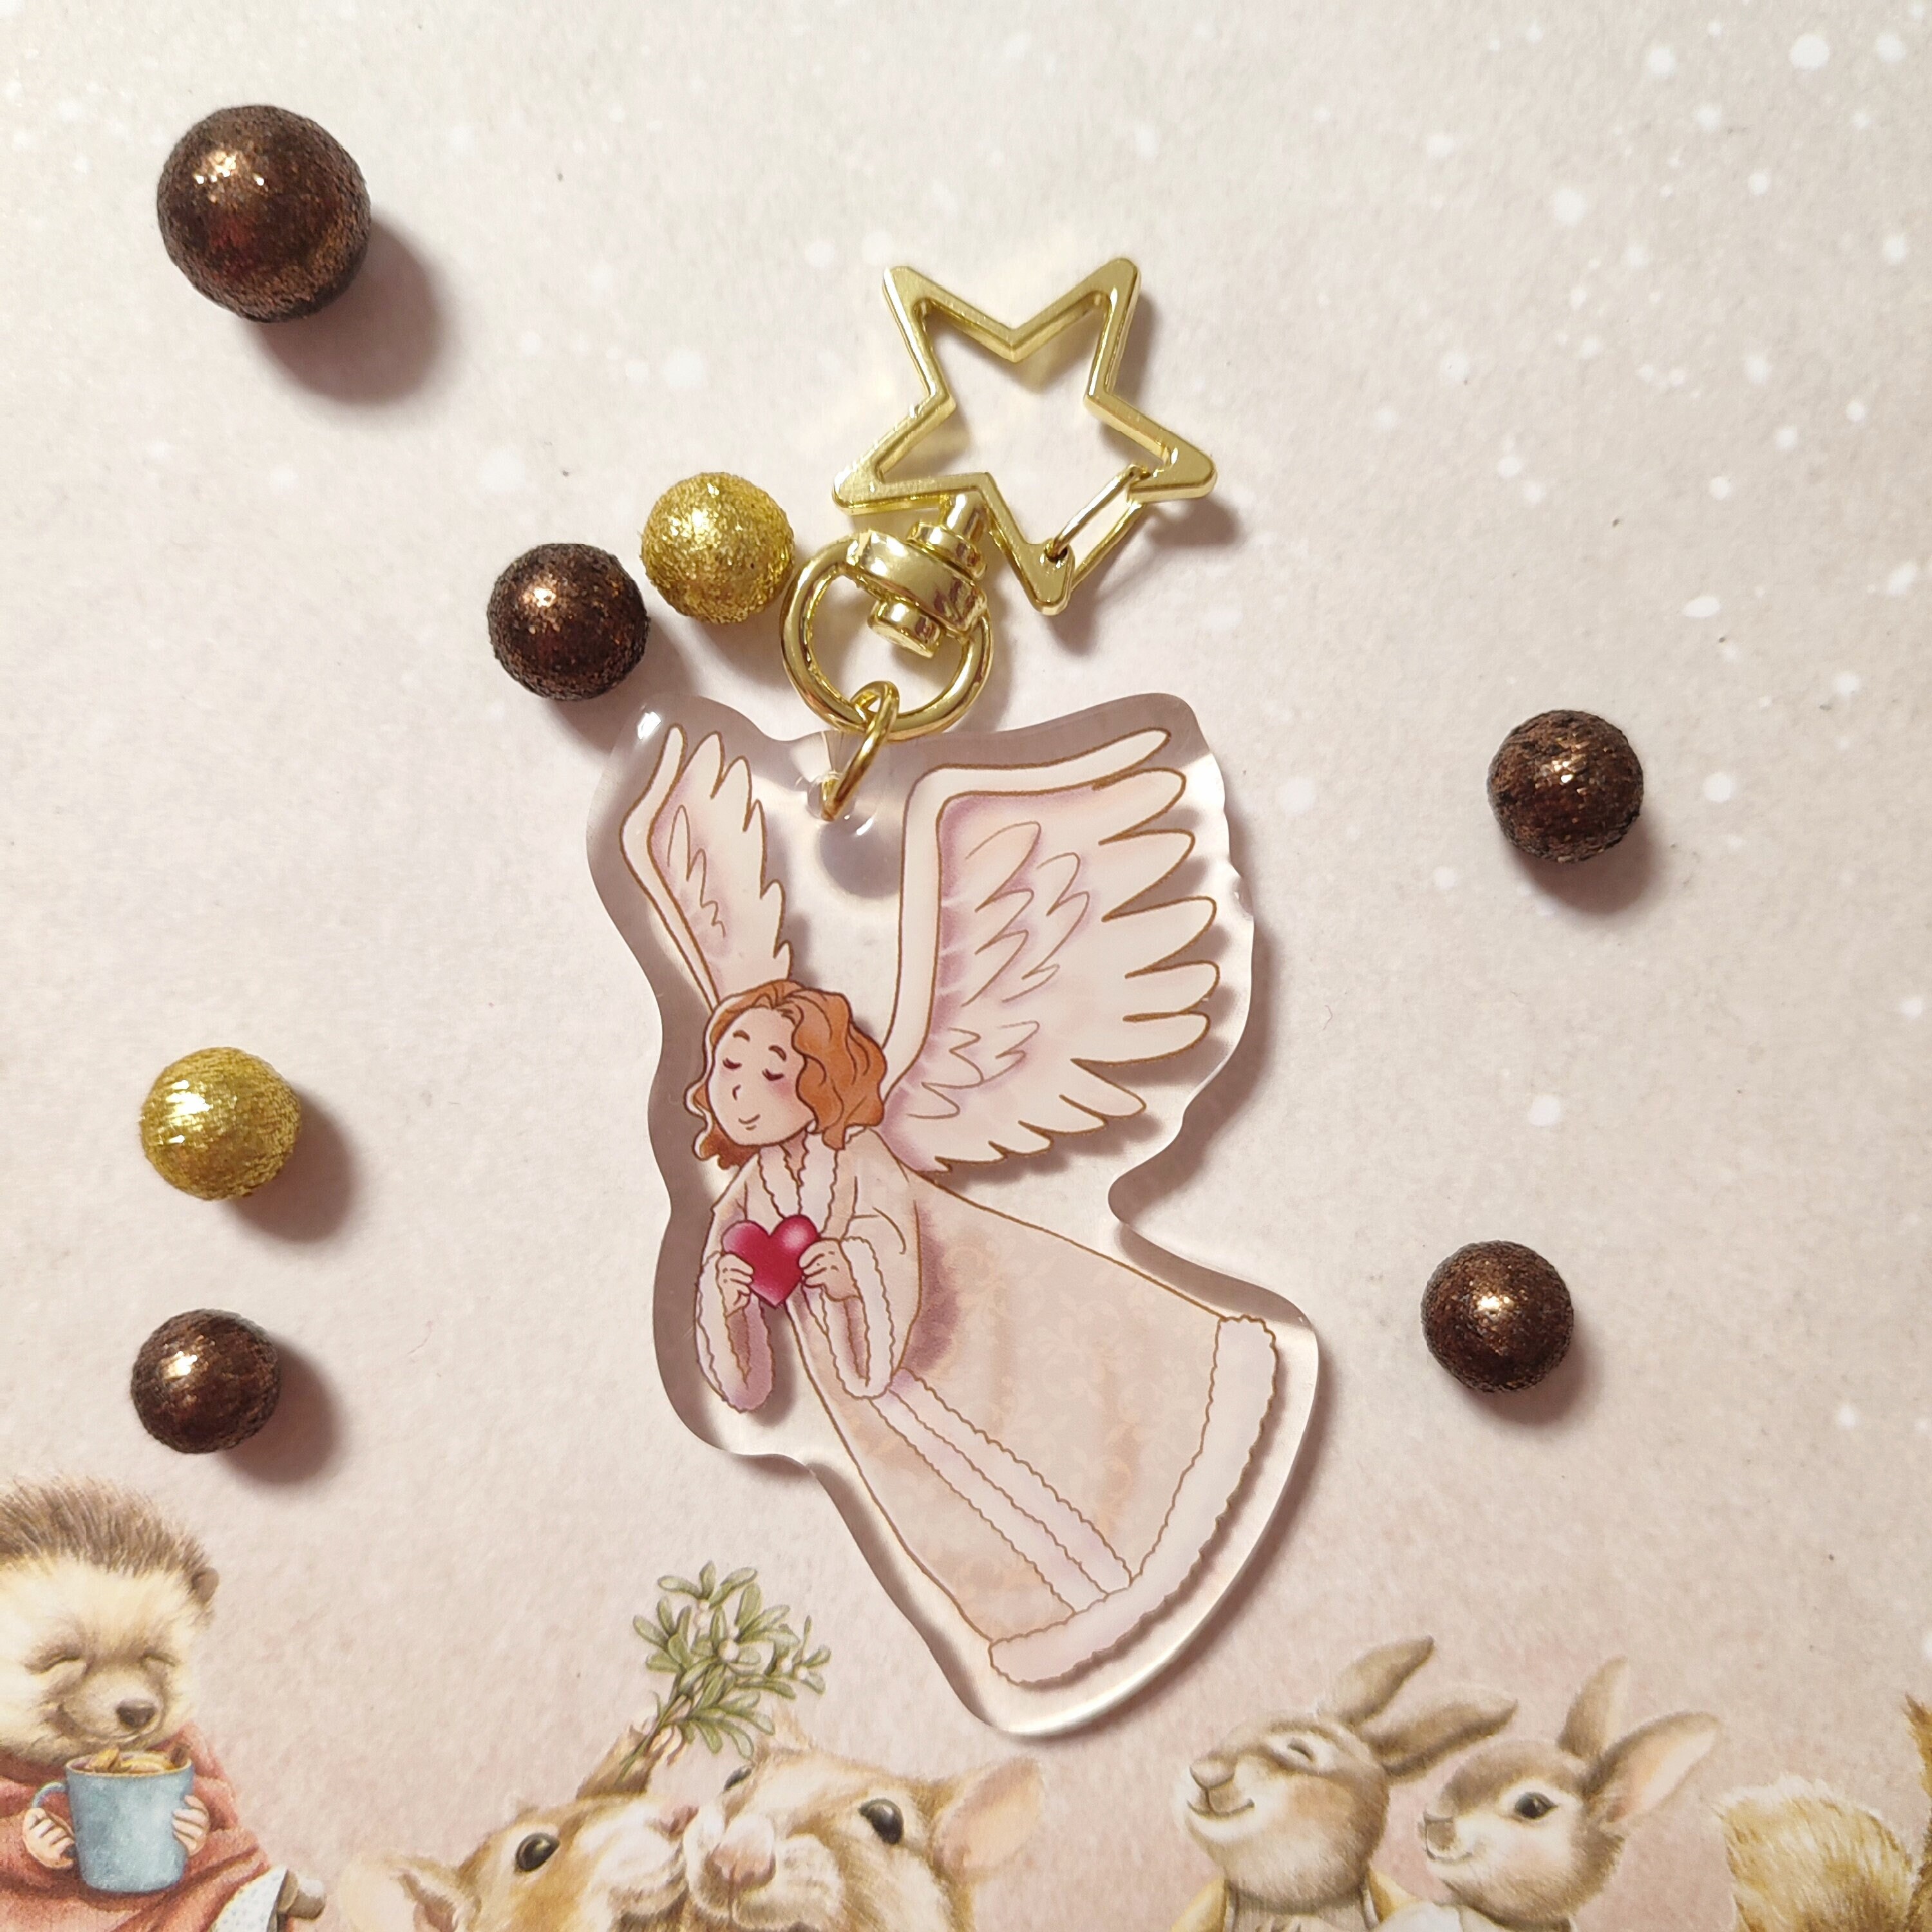 Depesche 7518-002 Porte-clés ange gardien en métal avec ange gardien  porte-bonheur et message d'amour pour offrir à la famille, amis et  connaissances